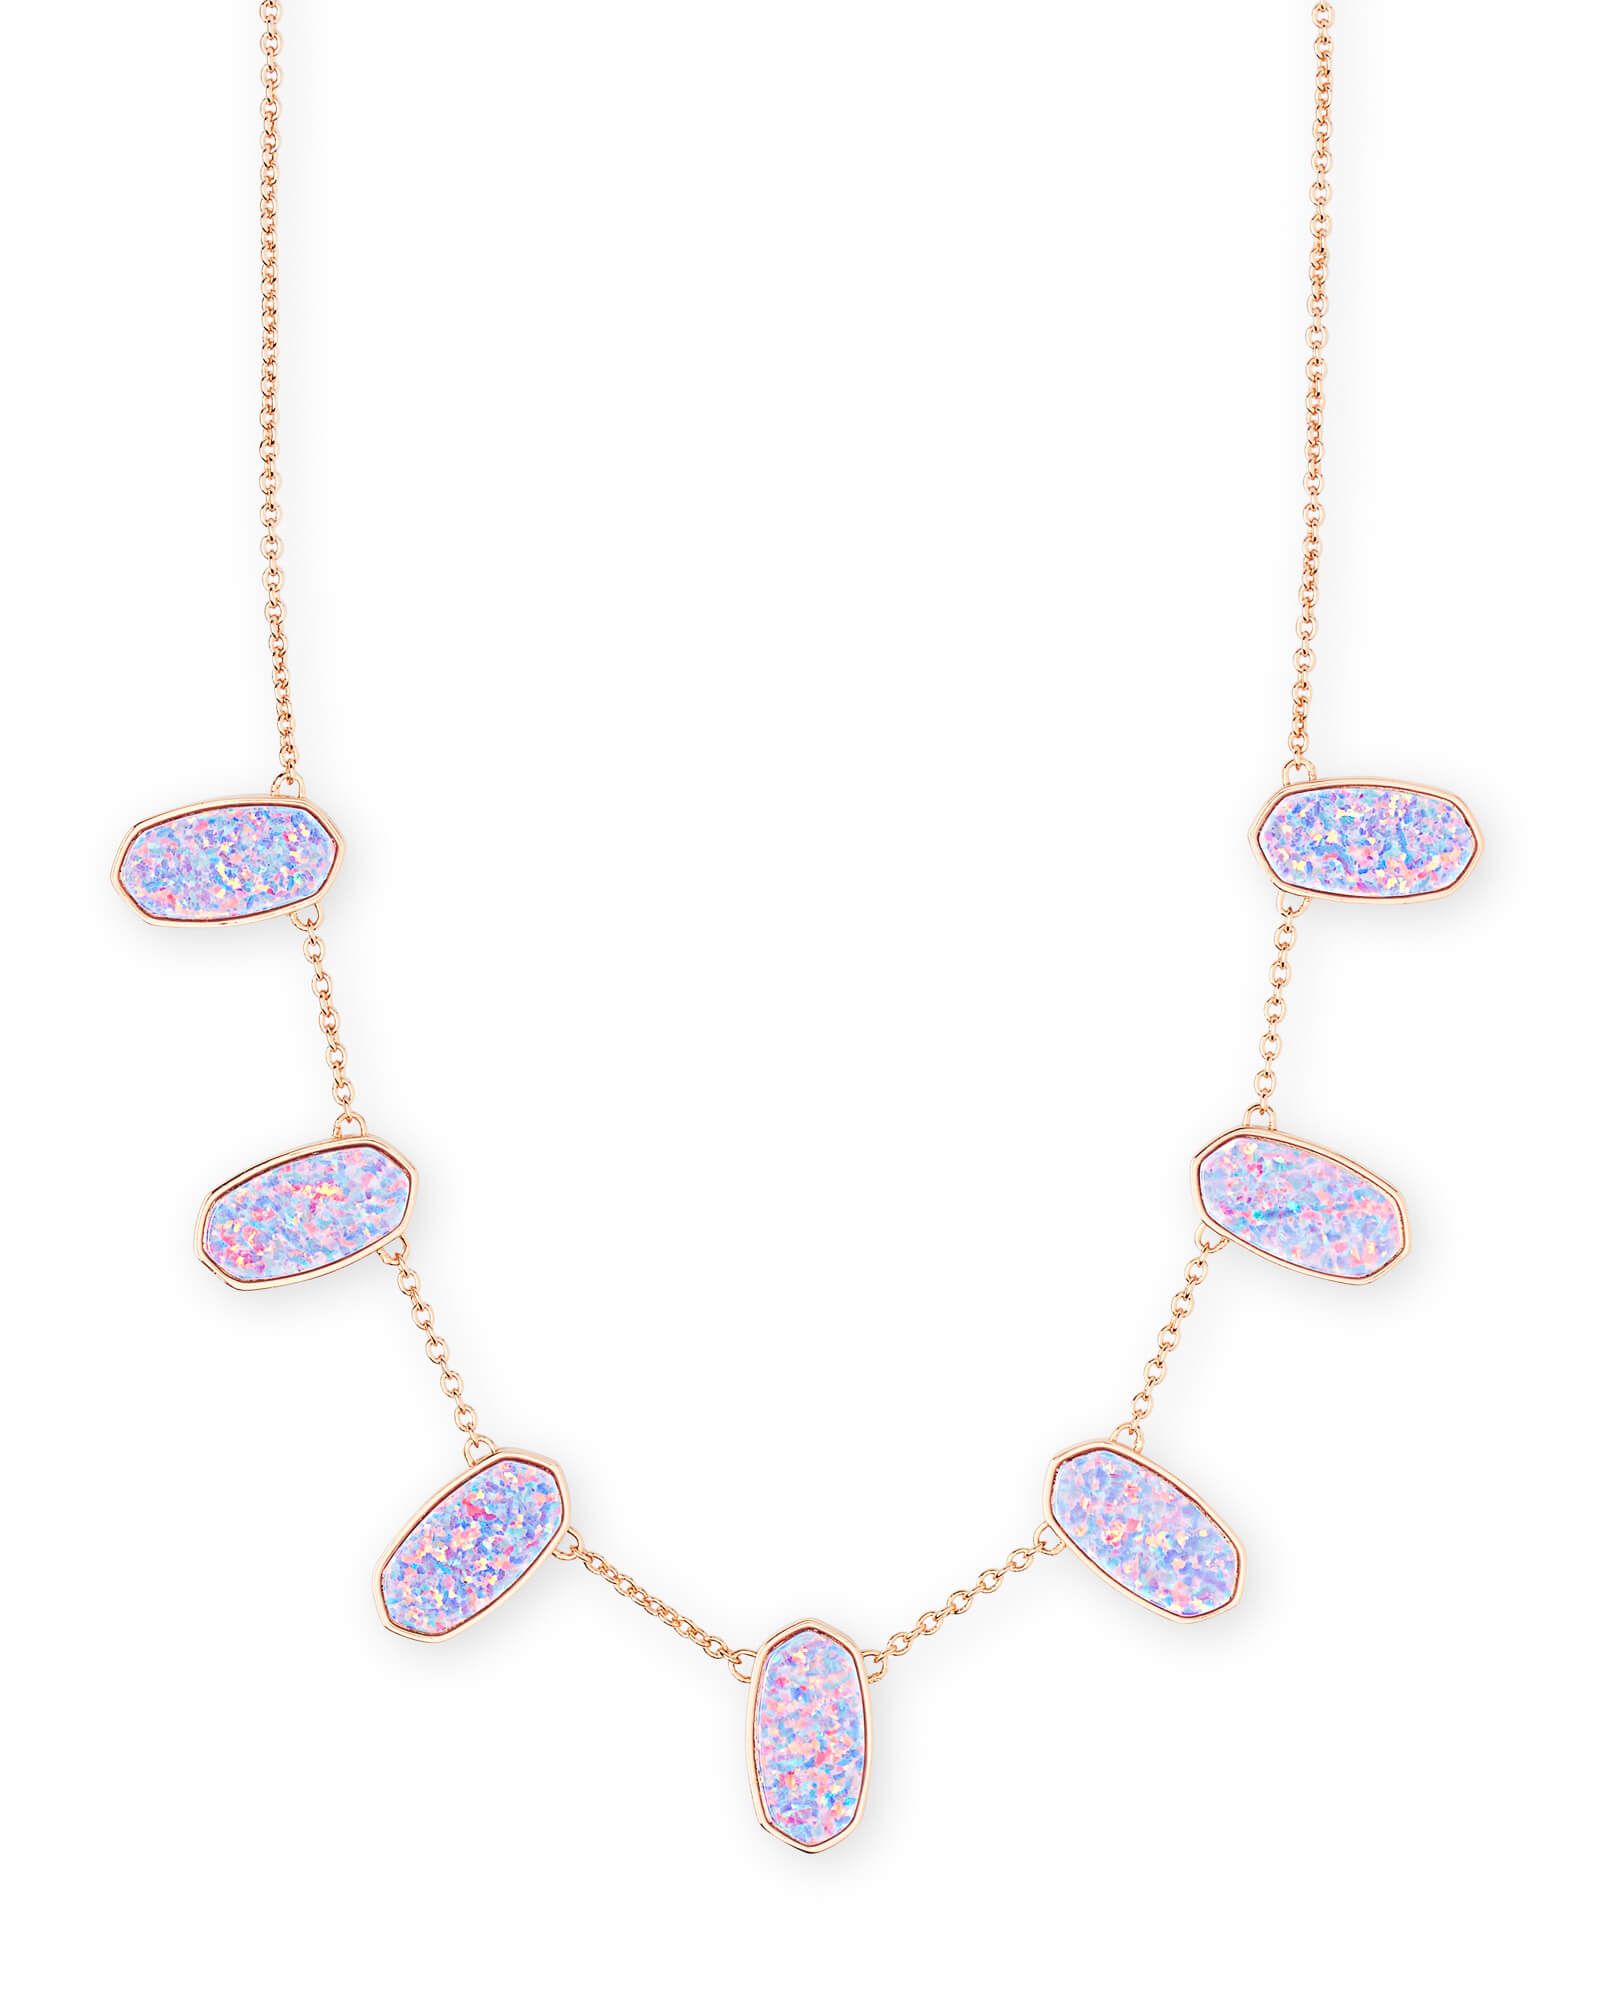 Meadow Rose Gold Collar Necklace in Lavender Kyocera Opal | Kendra Scott | Kendra Scott